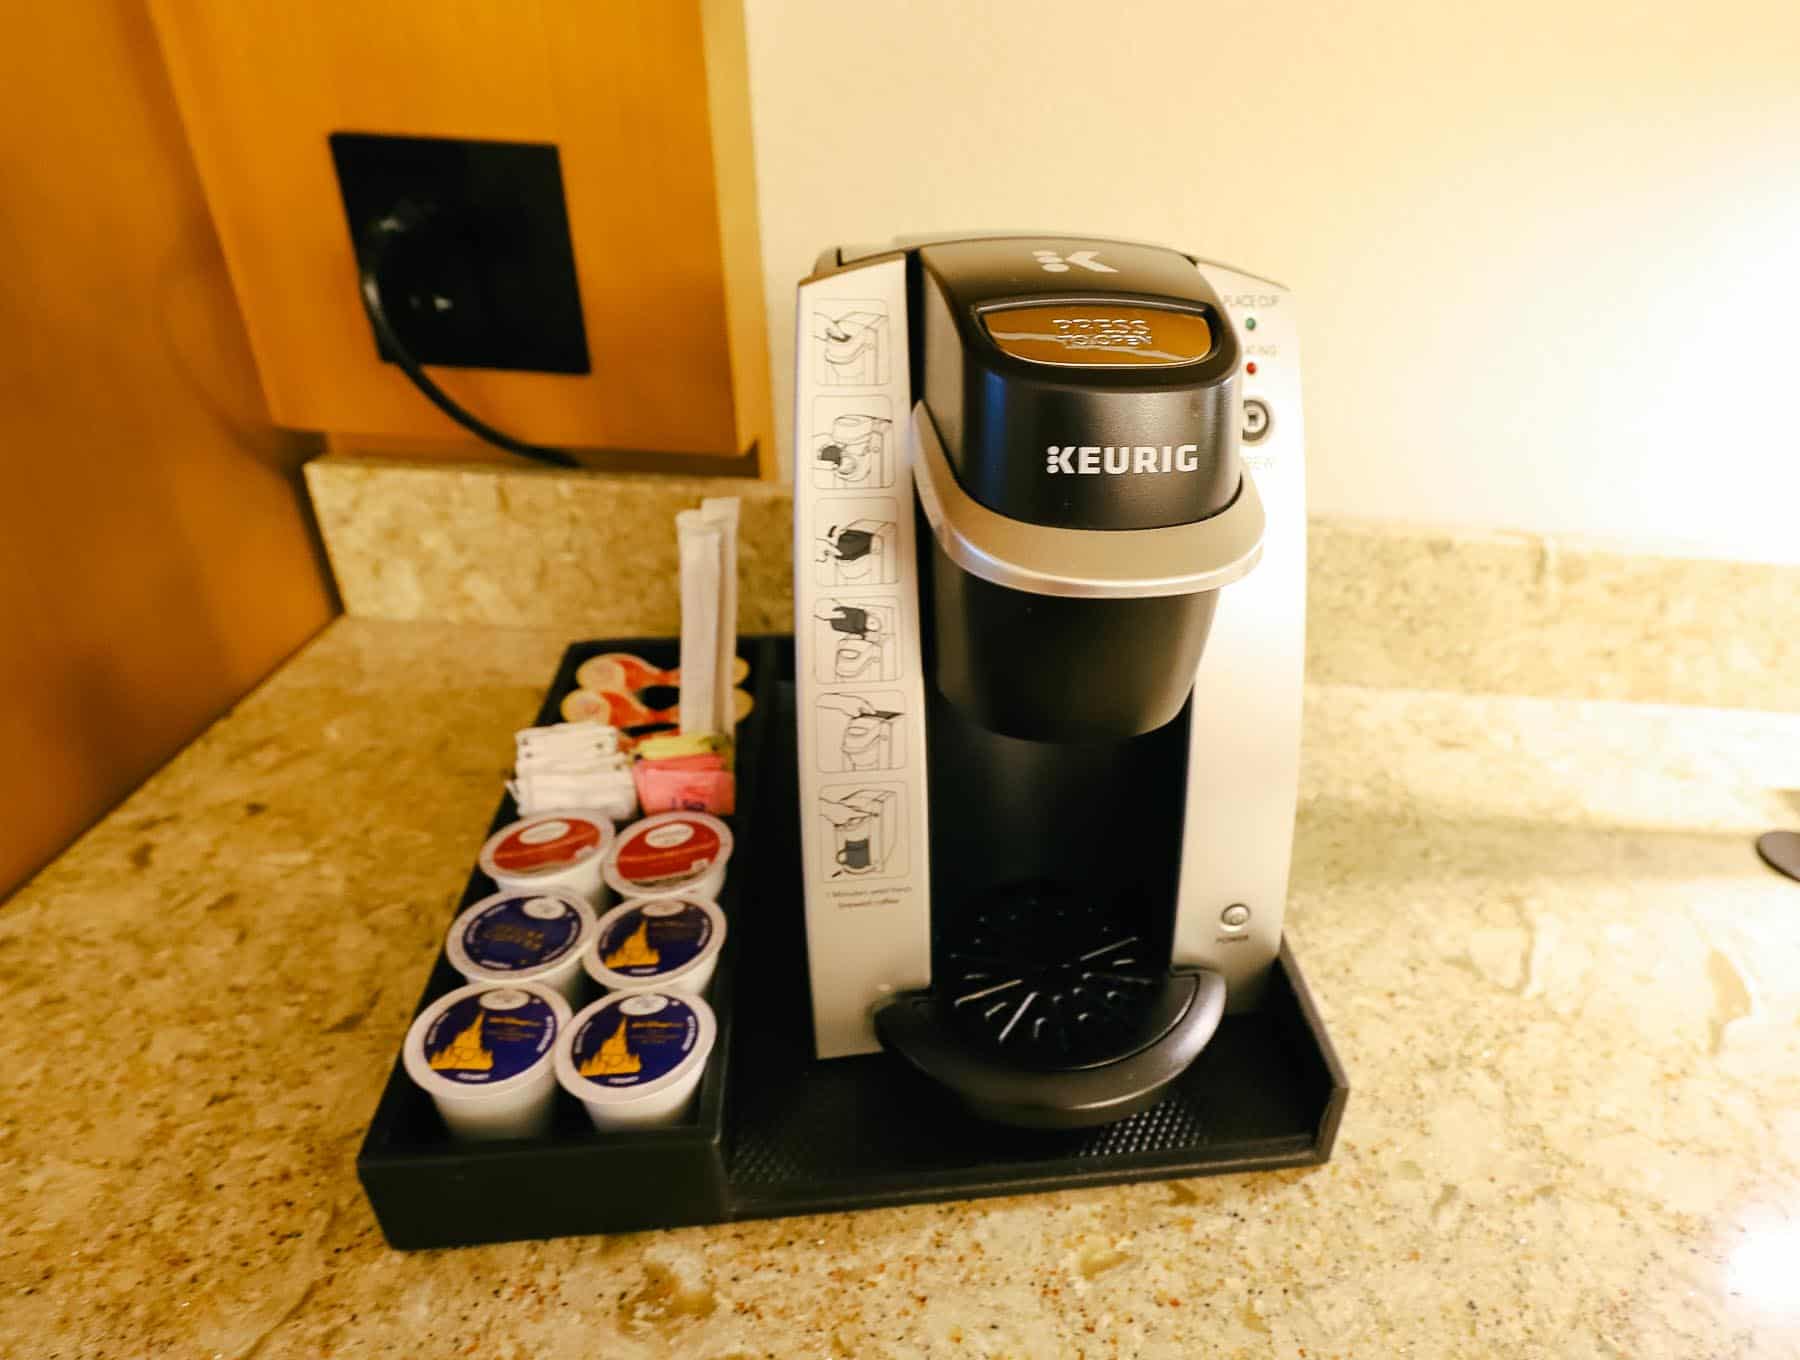 Keurig Coffee Maker in hotel room at Disney's Coronado Springs 